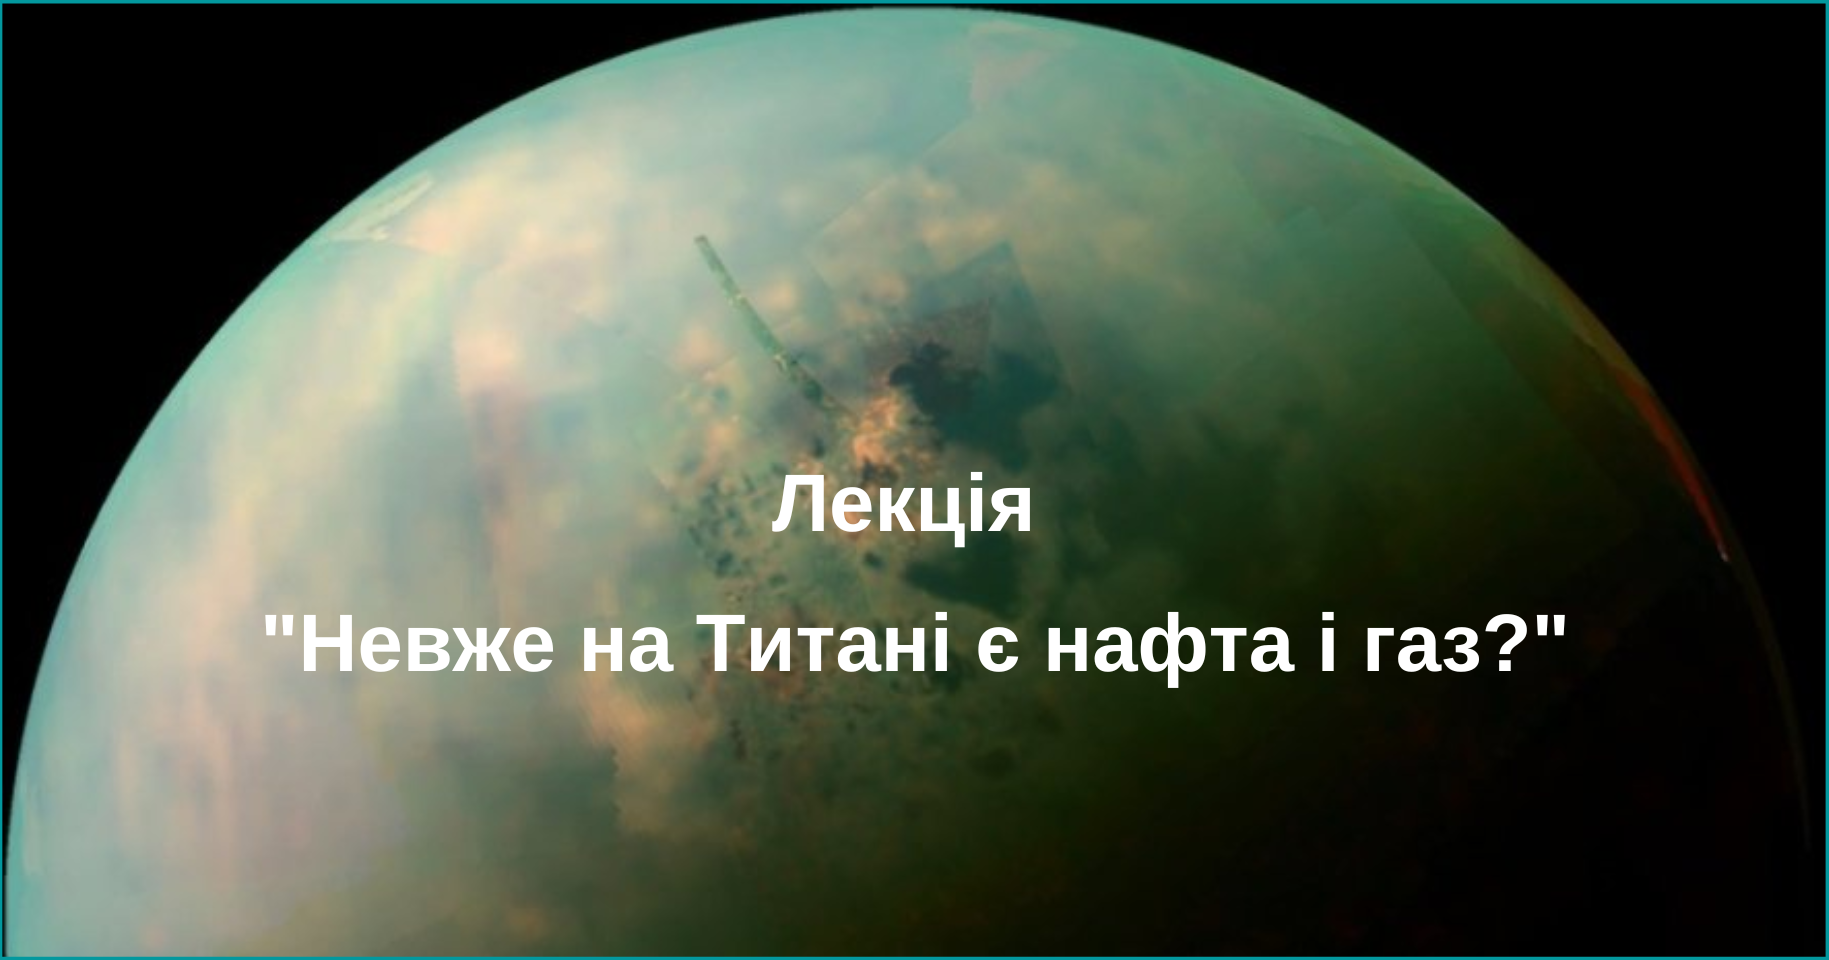 Лекція “Невже на Титані є нафта і газ?”